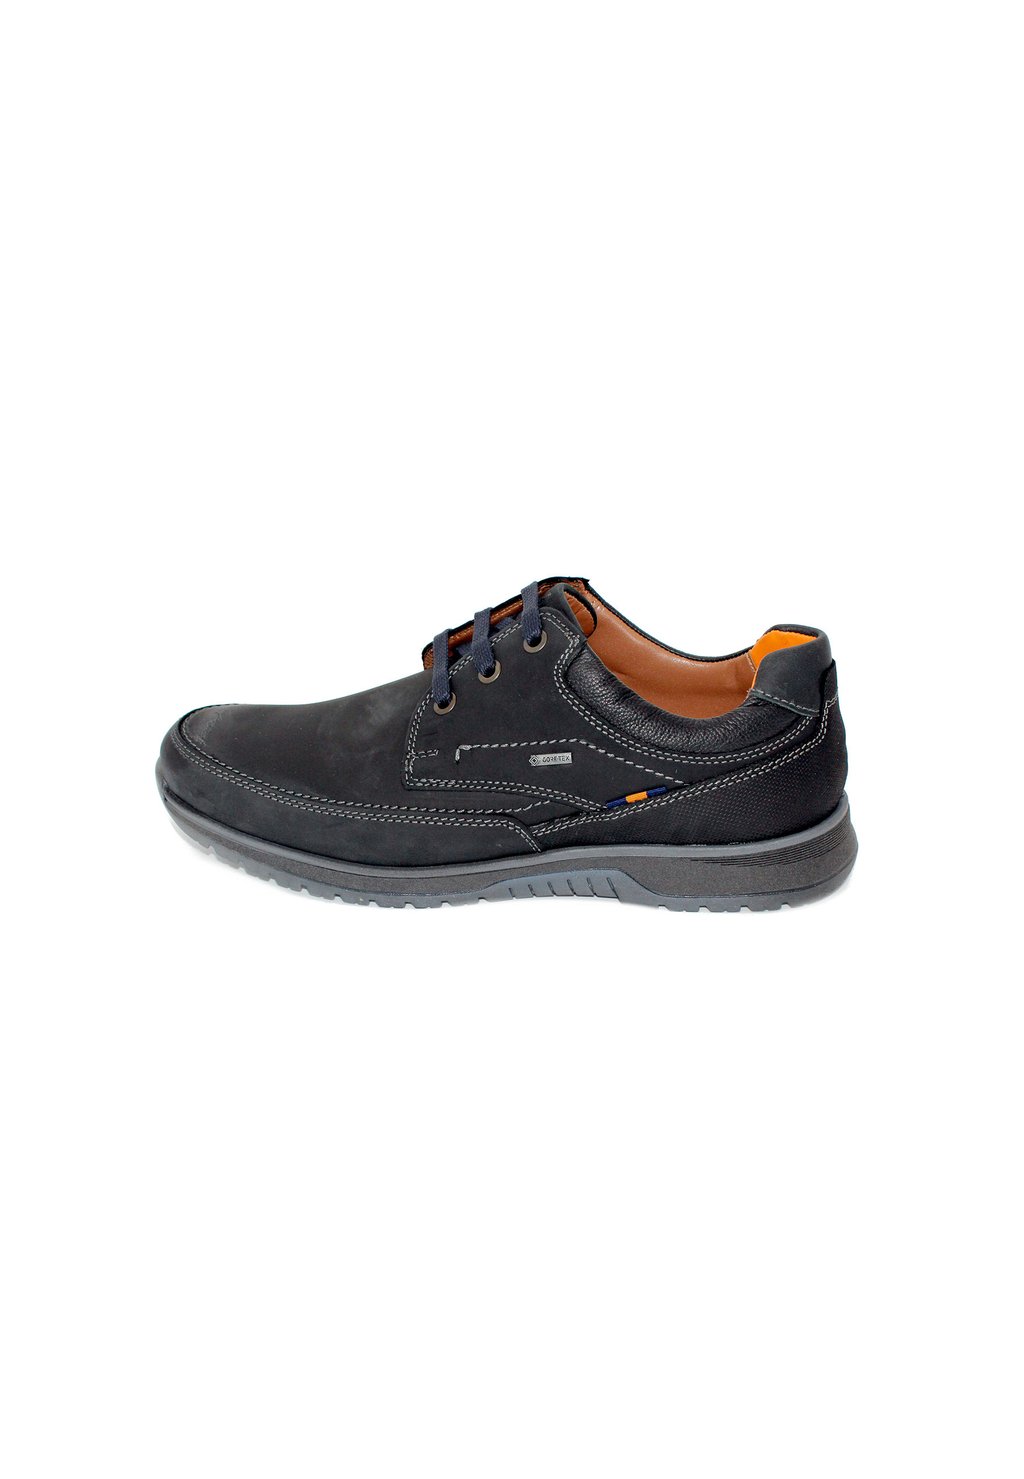 Спортивные туфли на шнуровке Fretz Men, цвет noir